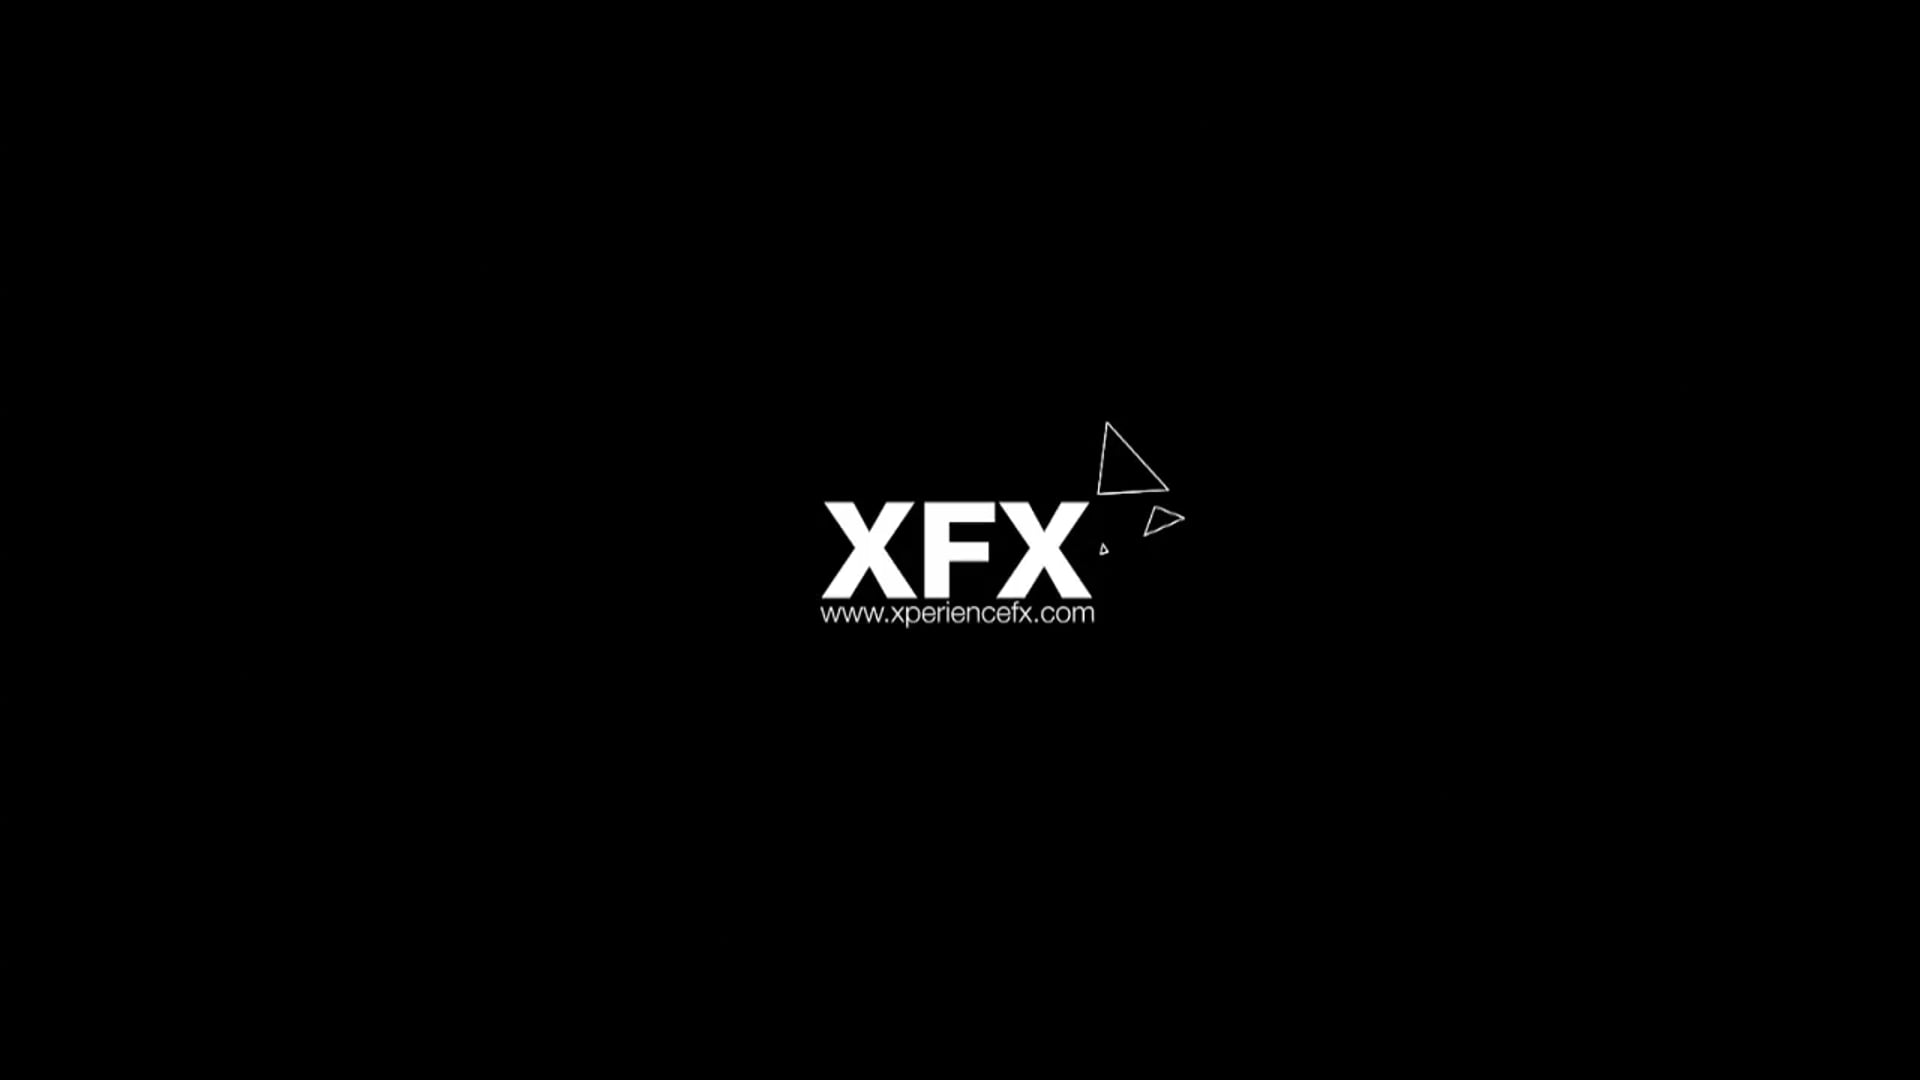 Demo XFX PUB